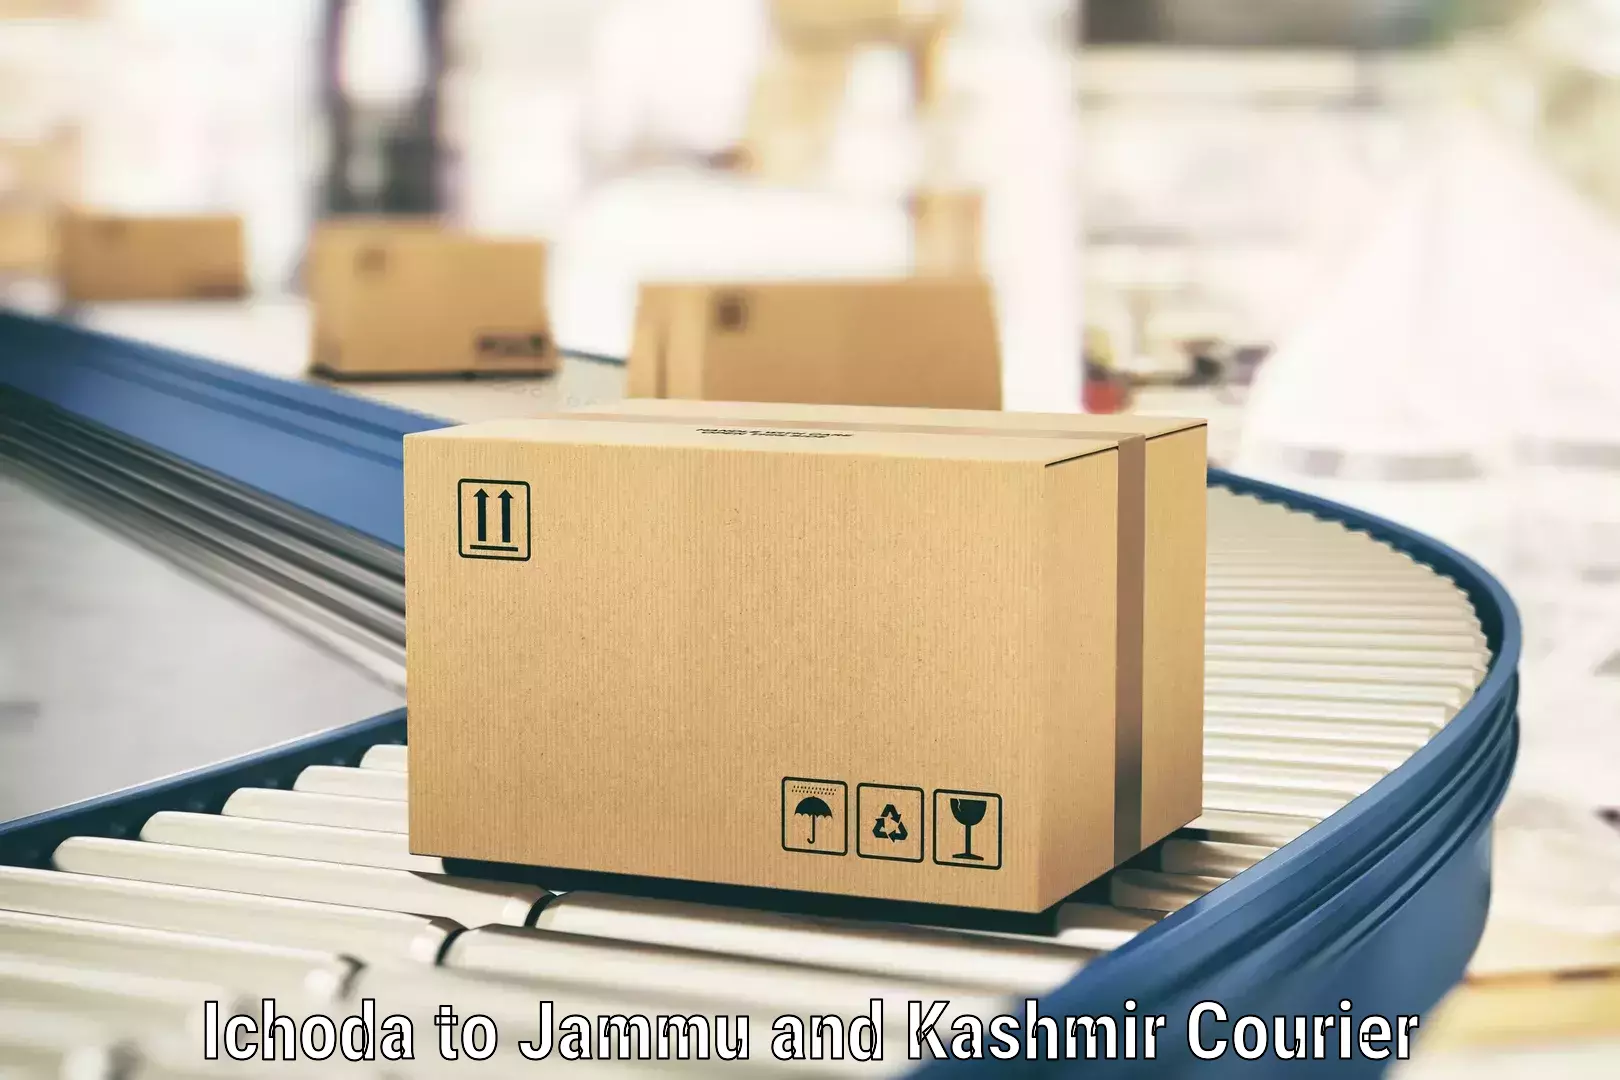 Door-to-door freight service Ichoda to Jammu and Kashmir